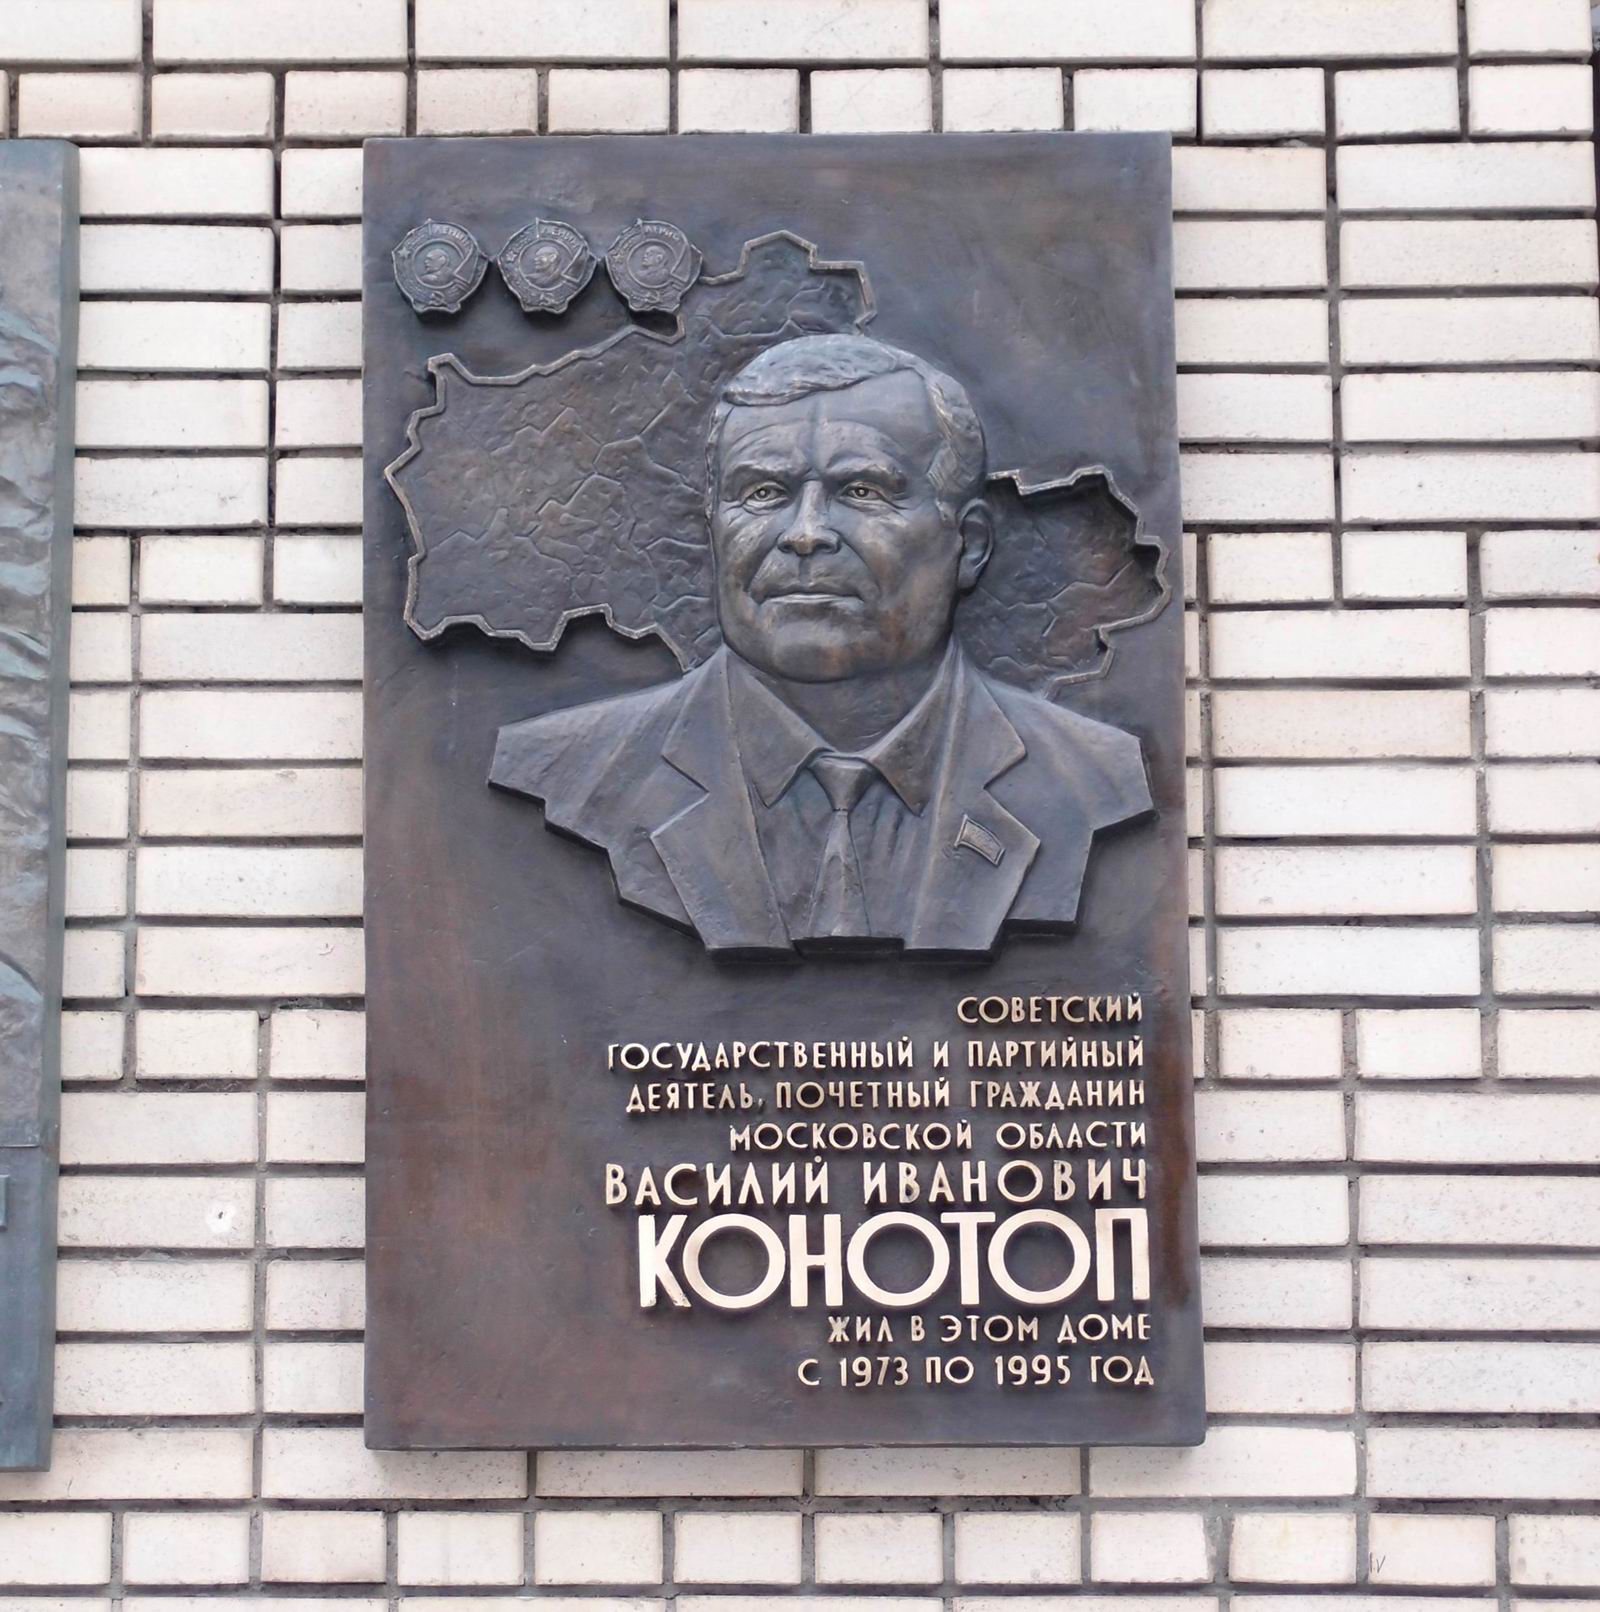 Мемориальная доска Конотопу В.И. (1916–1995), ск. А.А.Рожников, на улице Спиридоновка, дом 19, открыта 13.2.2015.